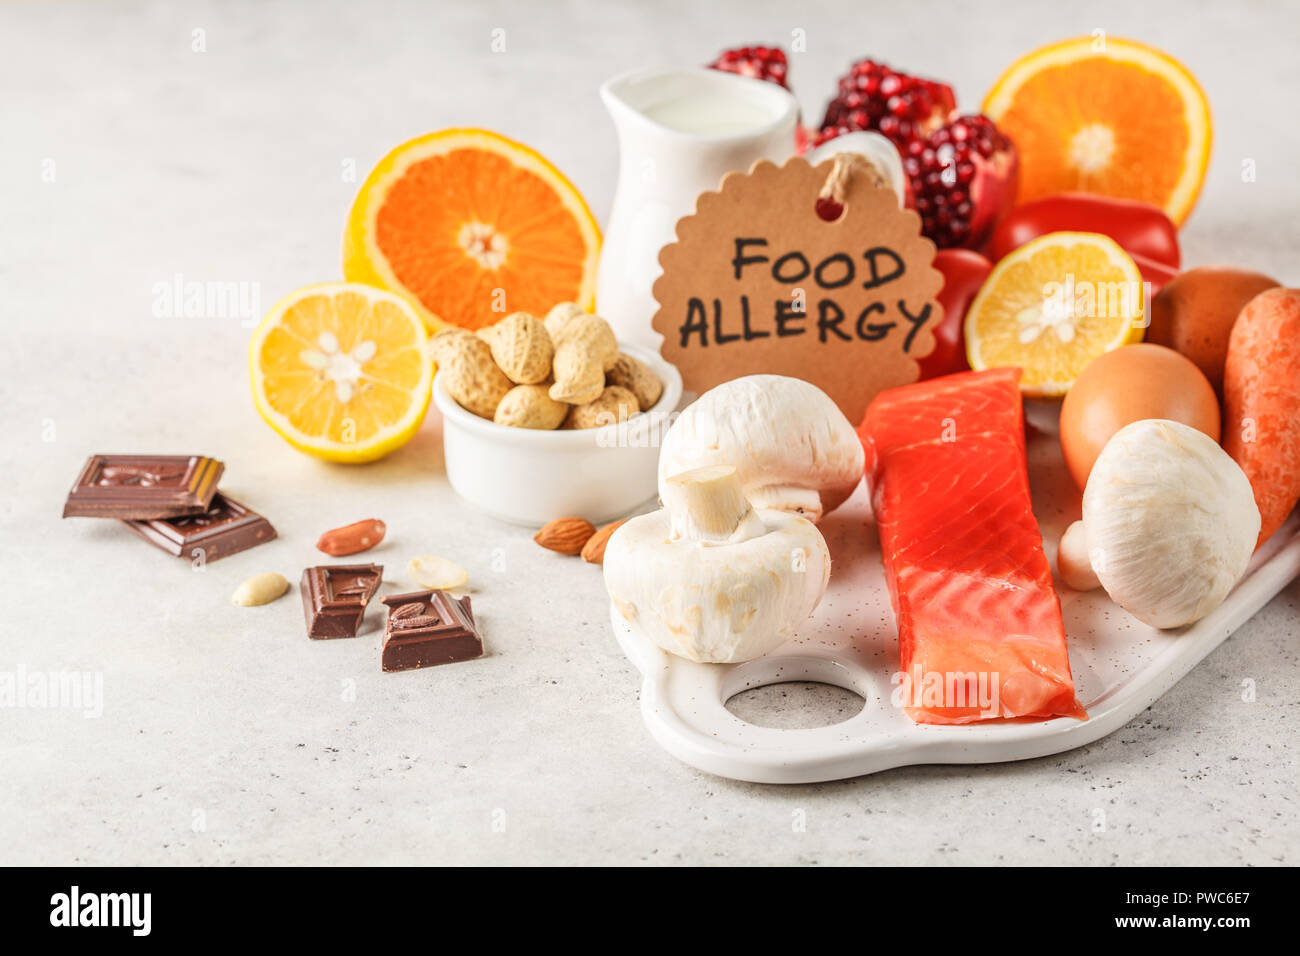 Allergie essen Konzept. Allergien, Fisch, Eier, Zitrusfrüchte, Schokolade, Pilze und Nüsse. Gesundheit und Medizin in Essen. Weißer Hintergrund. Stockfoto